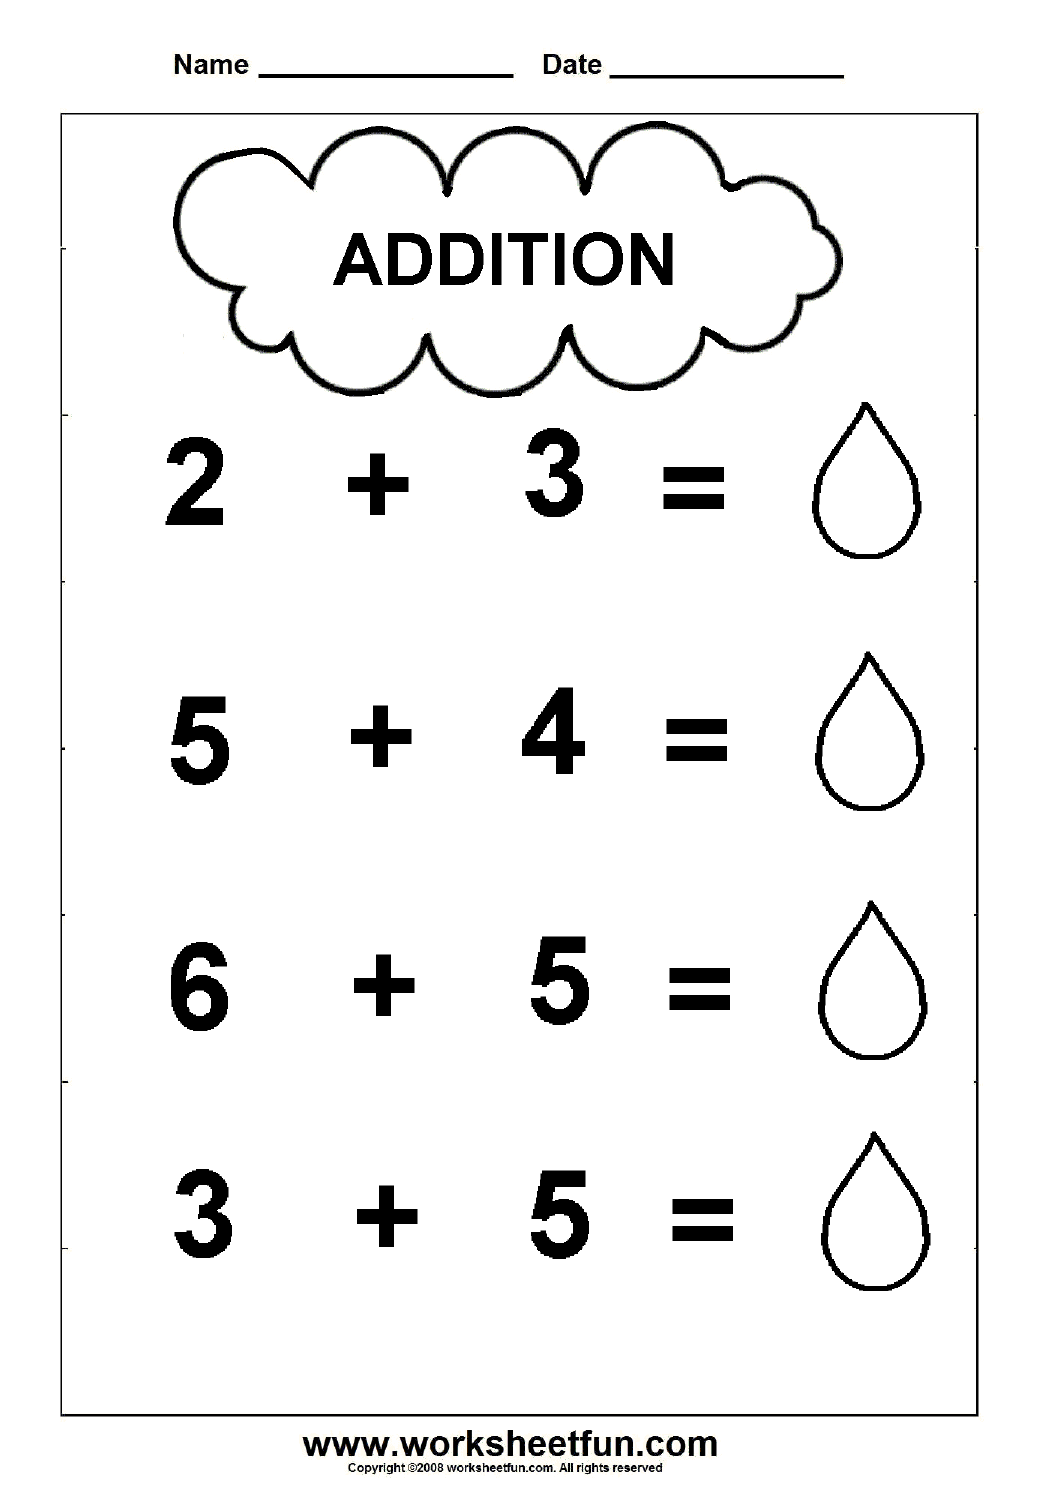 printable simple addition worksheets for kindergarten